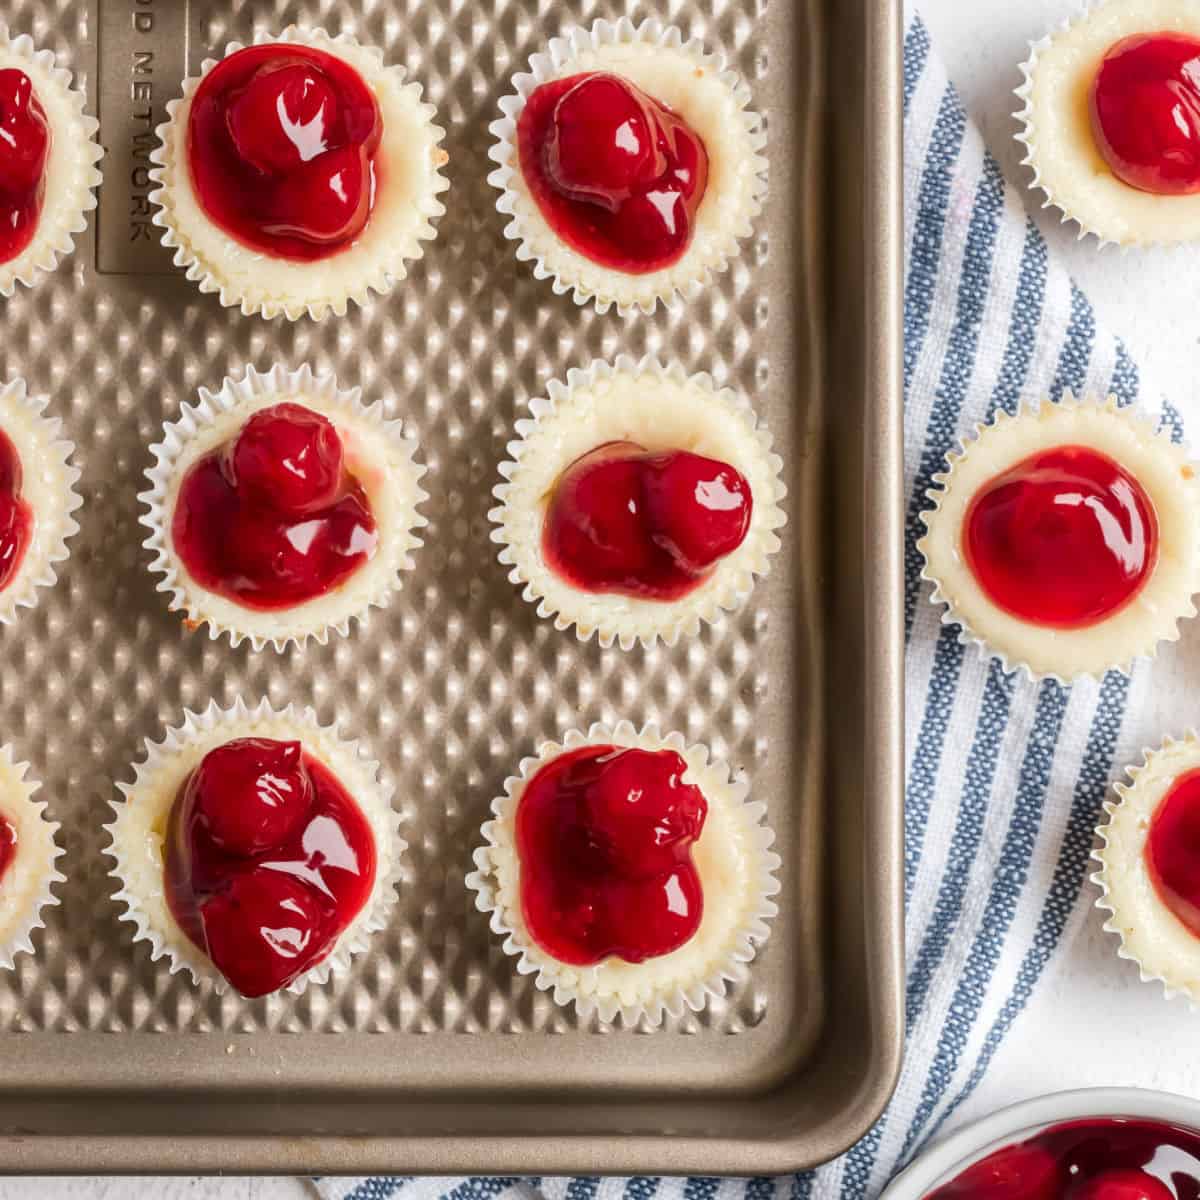 https://www.shugarysweets.com/wp-content/uploads/2019/11/mini-cherry-cheesecakes-recipe.jpg